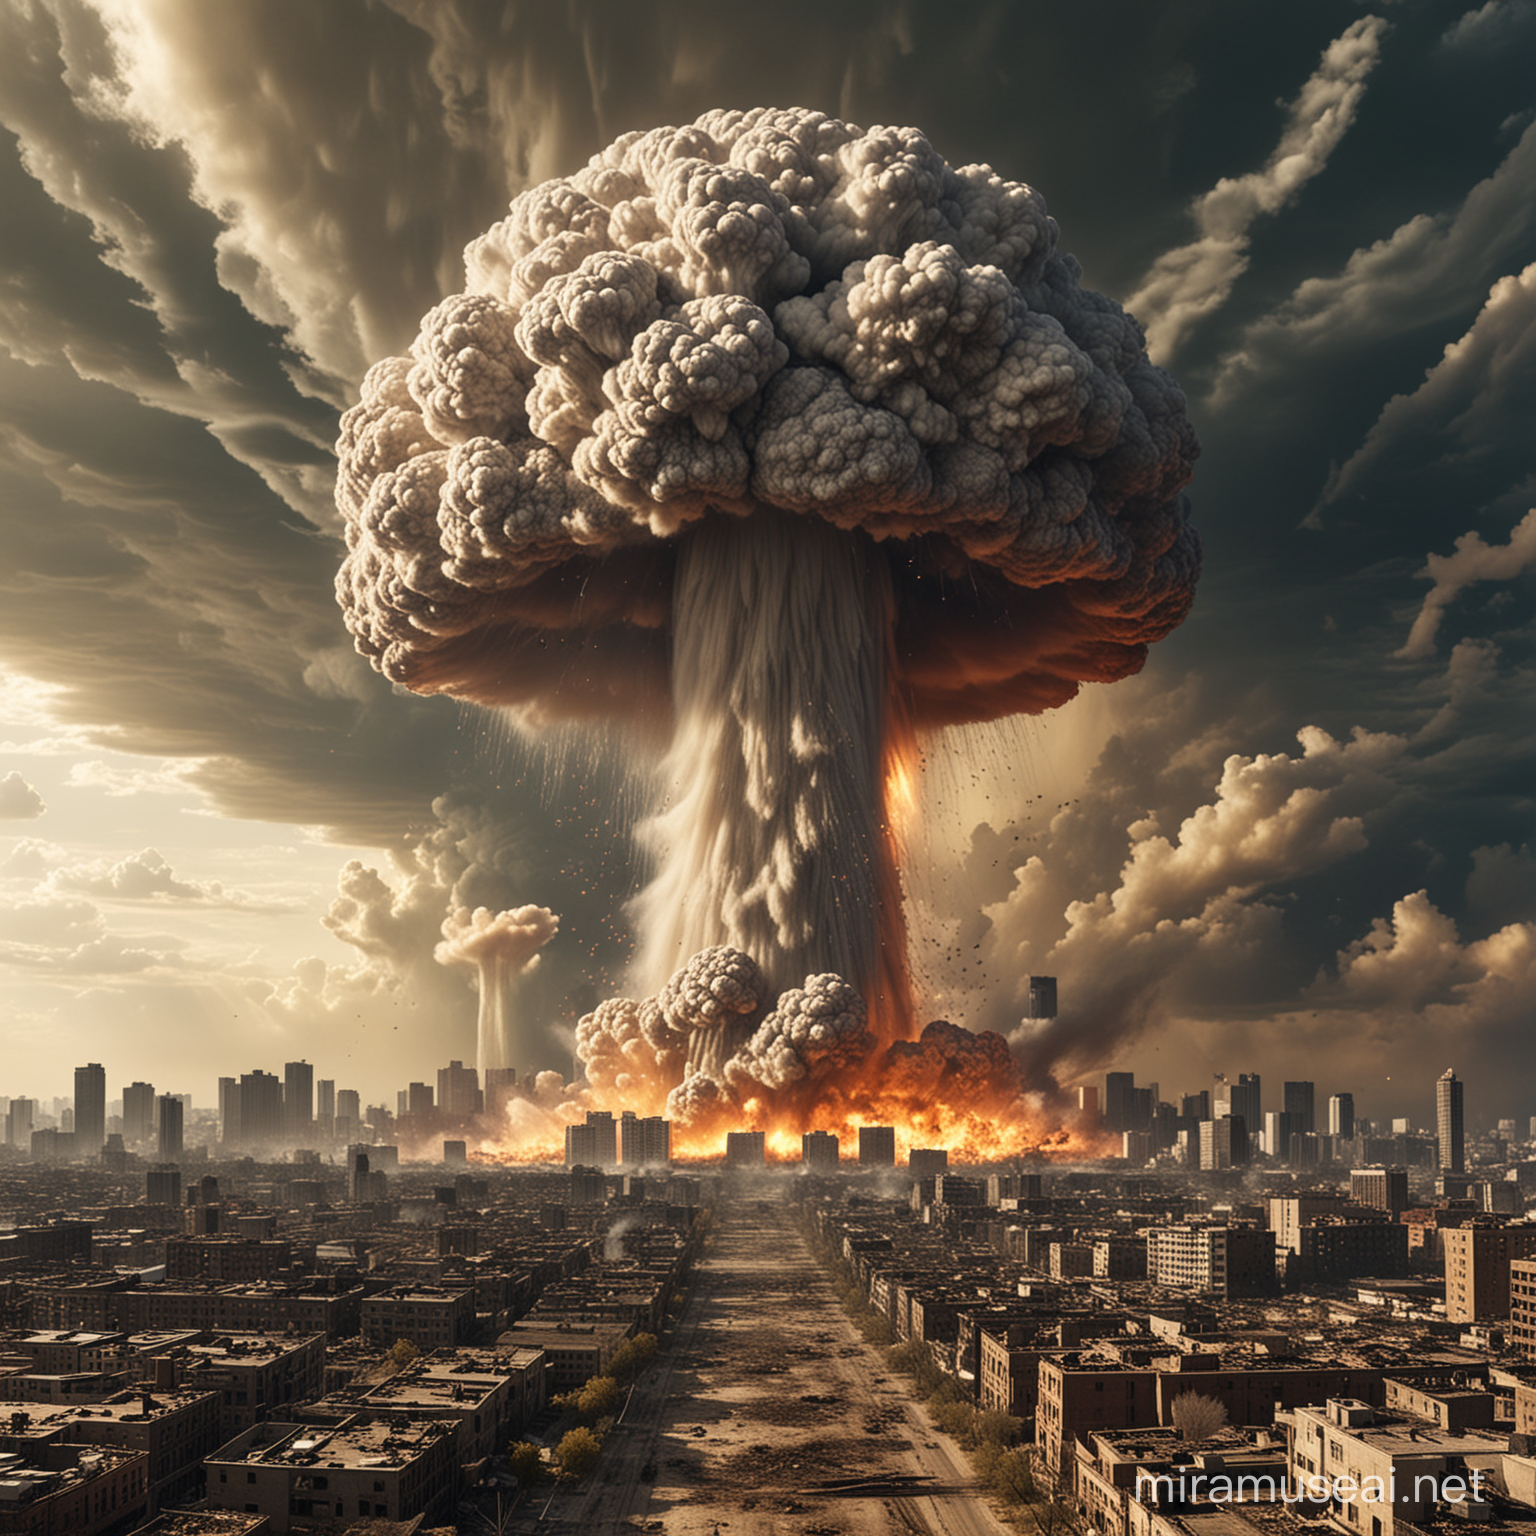 Urban Devastation Nuclear Blast Creates Mushroom Cloud Over City